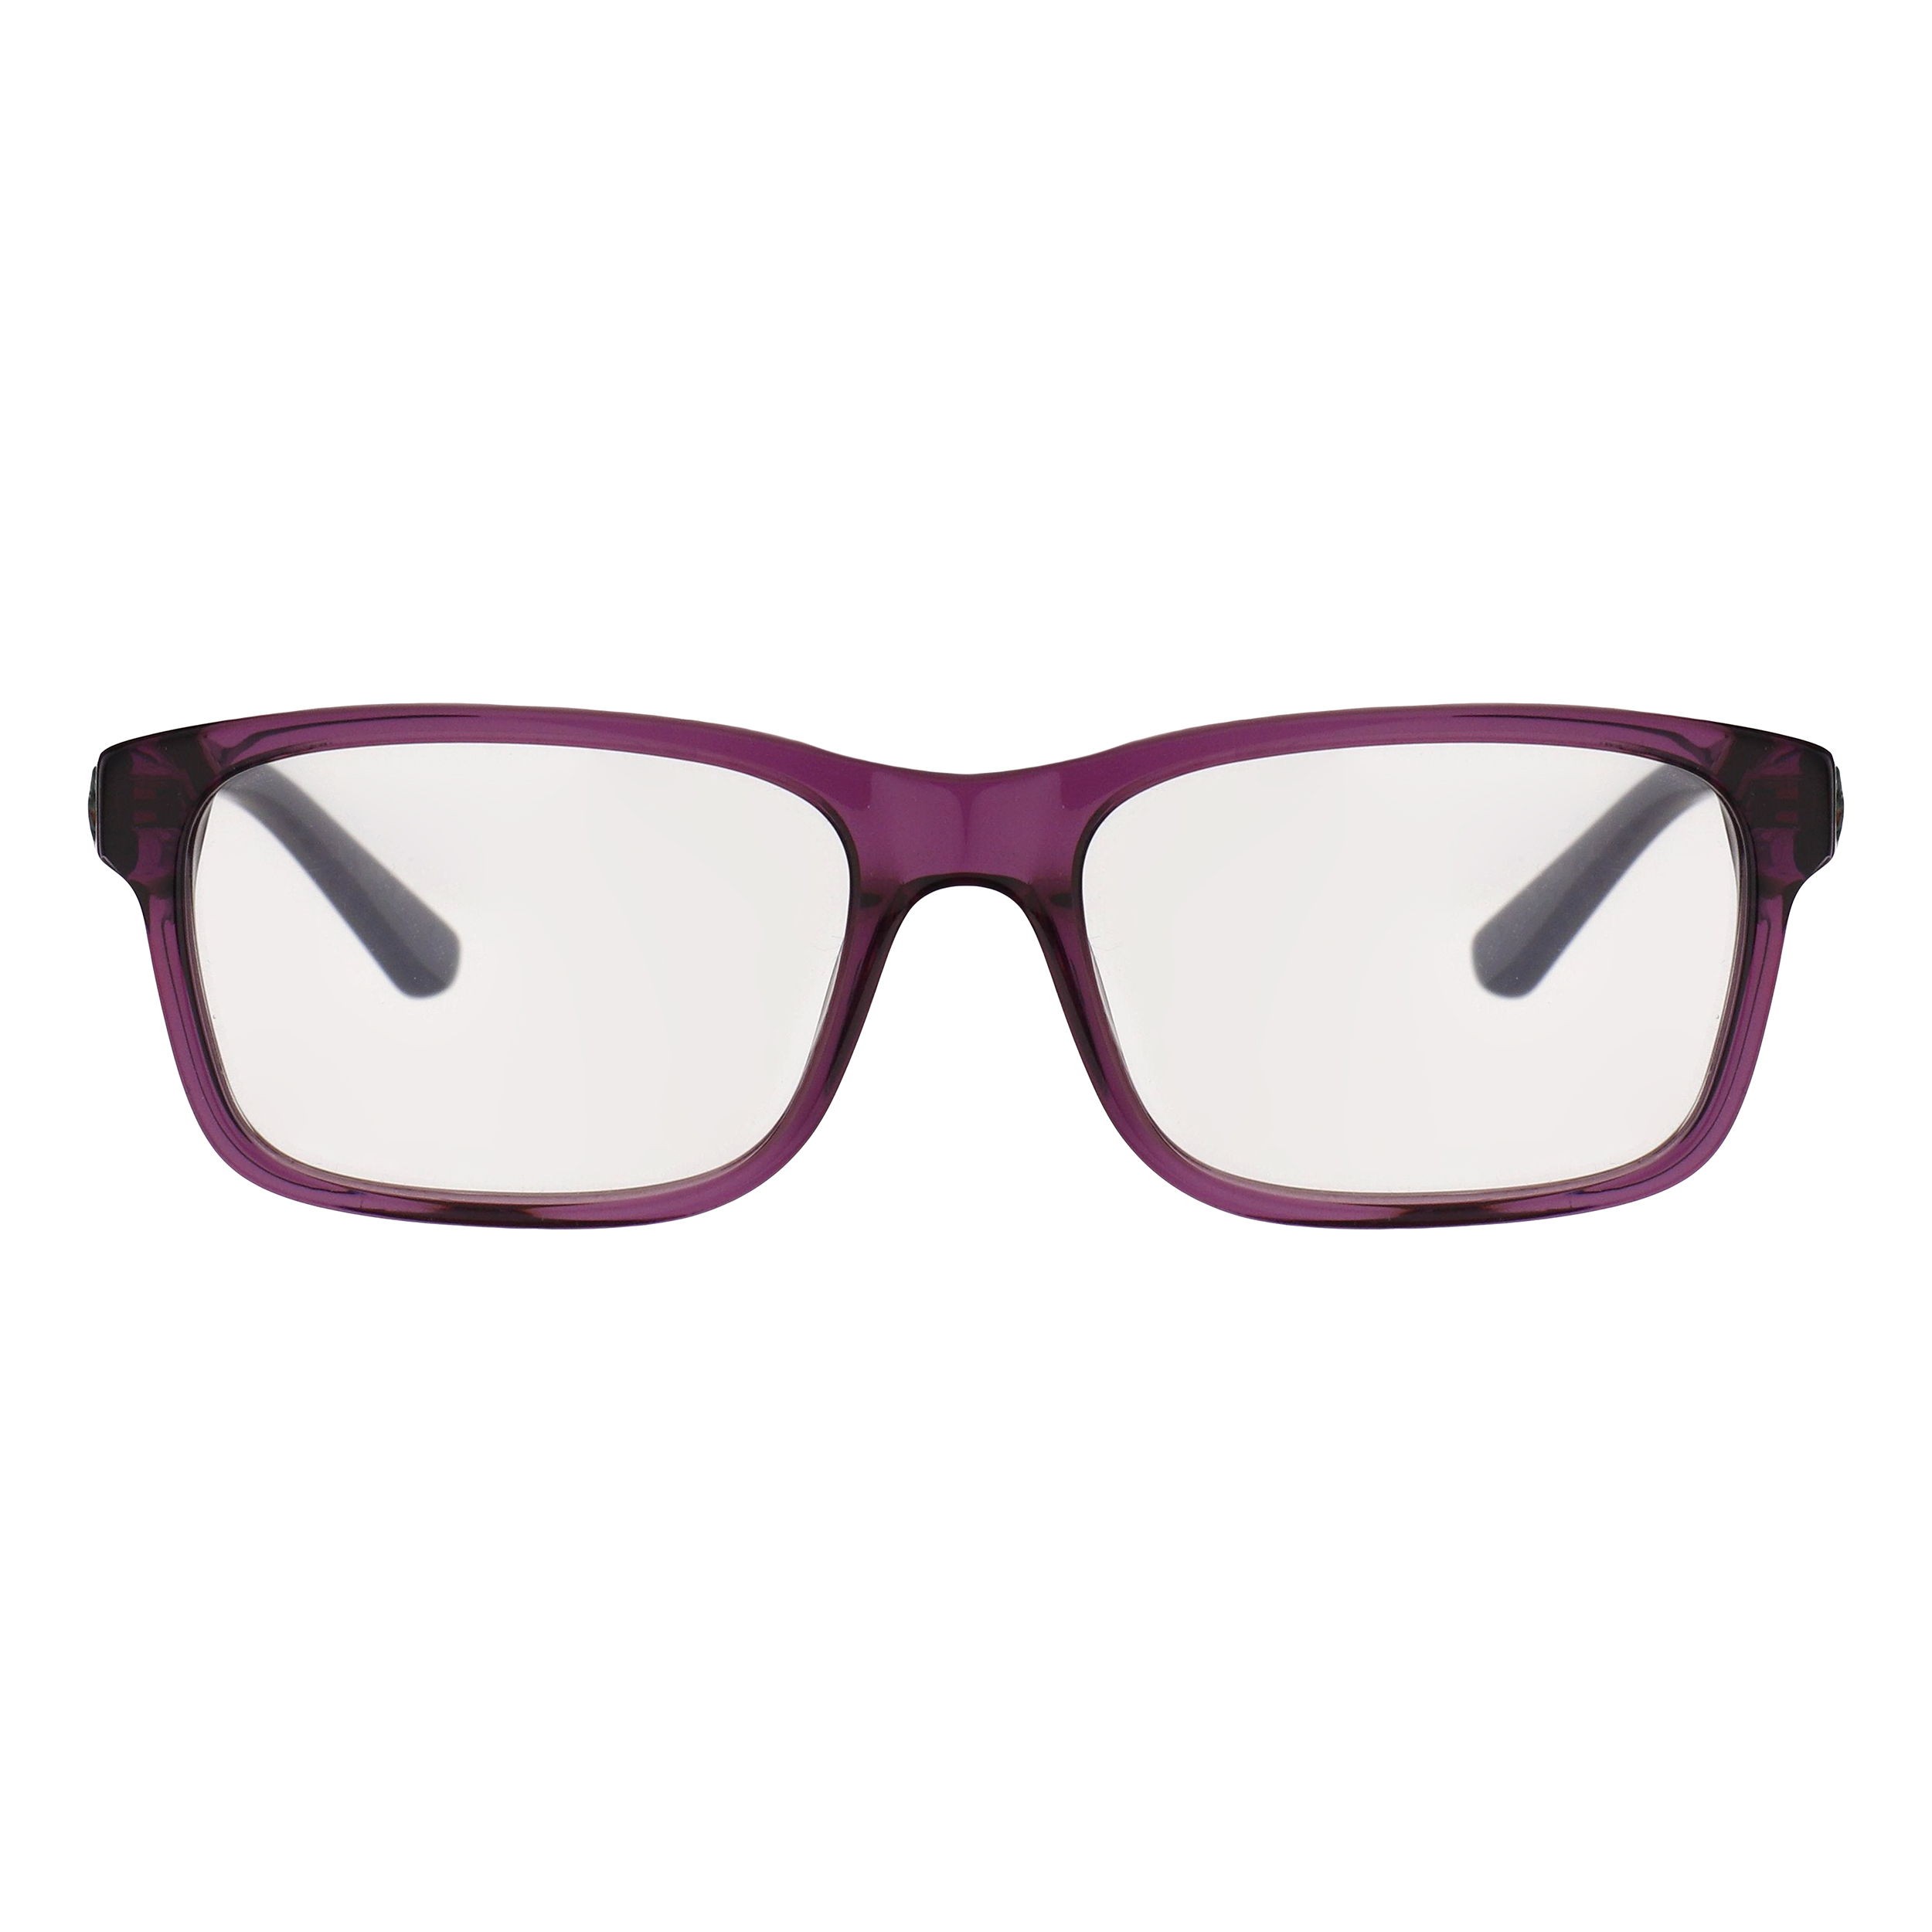 فریم عینک طبی لاگوست مدل 3612-514 -  - 1